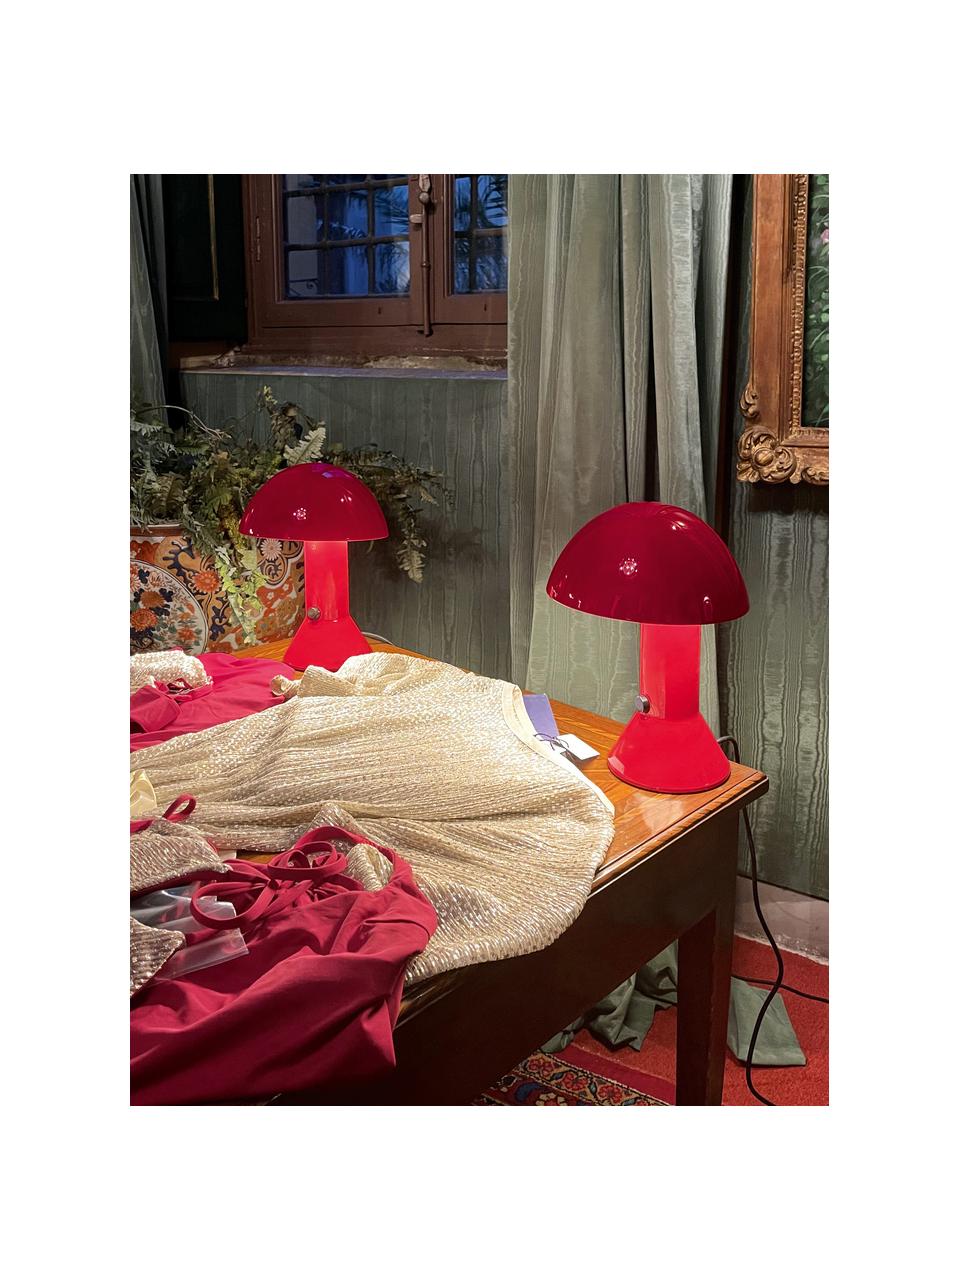 Lampada da tavolo piccola con paralume orientabile Elmetto, Plastica laccata, Rosso, Ø 22 x Alt. 28 cm